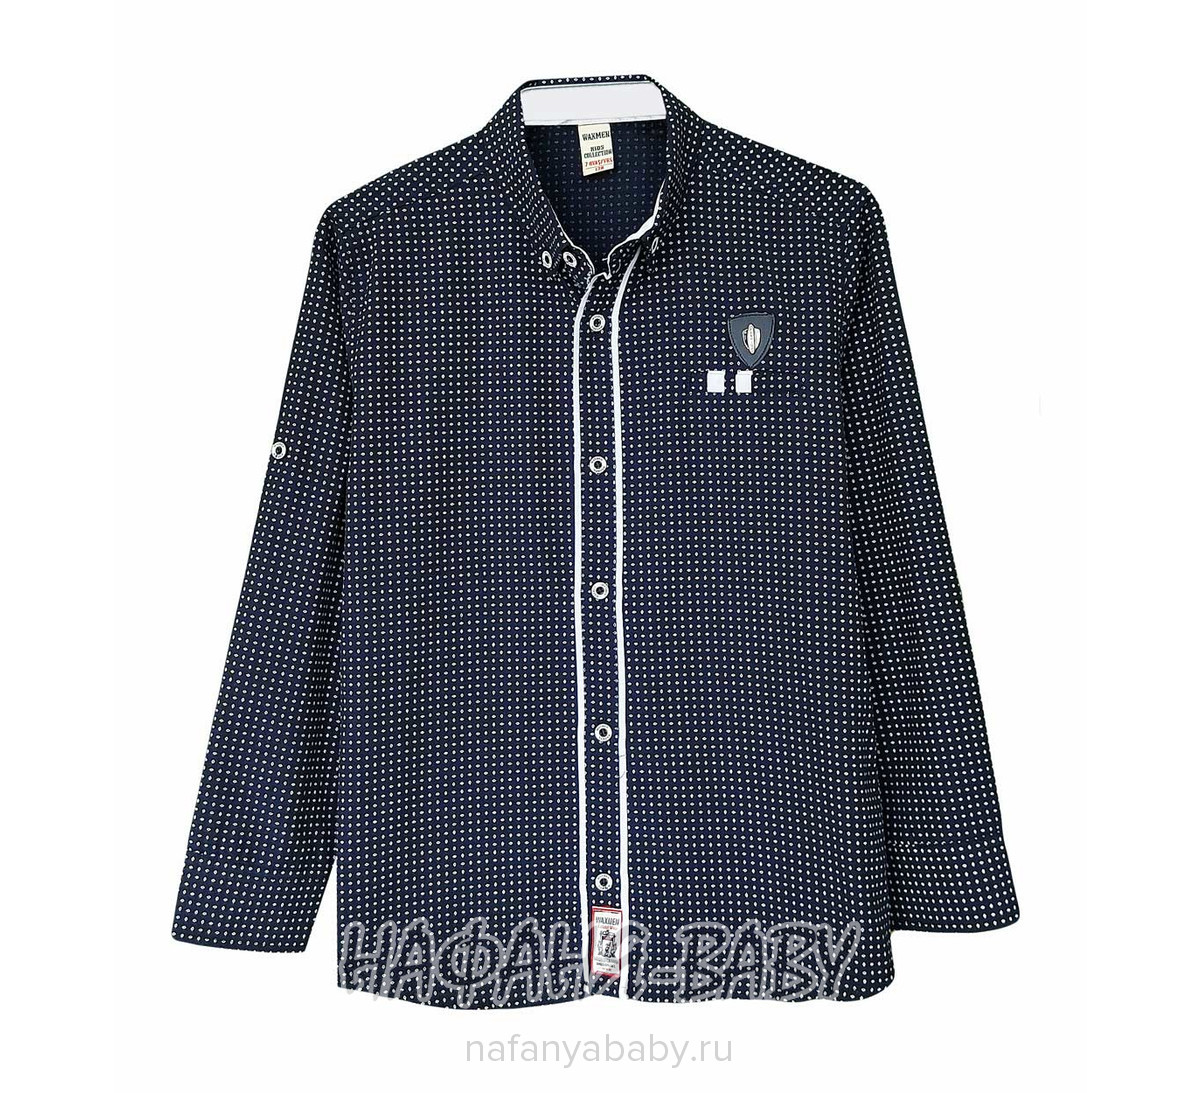 Рубашка длинный рукав WAXMEN, купить в интернет магазине Нафаня. арт: 5062-0.